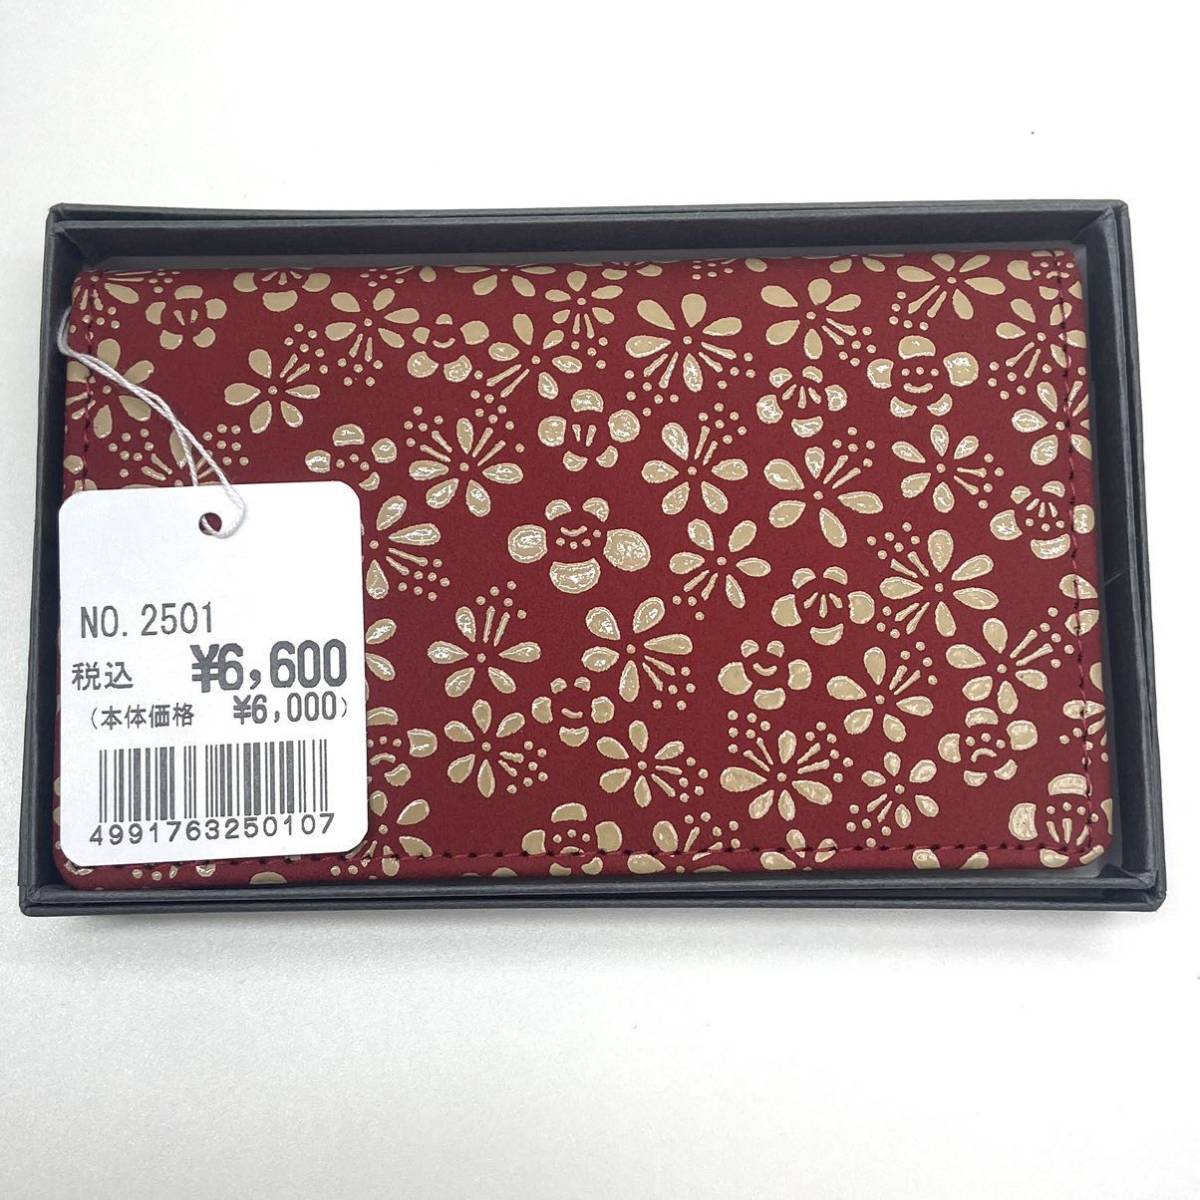 [ новый товар * не использовался ] печать . магазин in tenya Uehara . 7 футляр для визитных карточек футляр для карточек красный цвет олень кожа id122